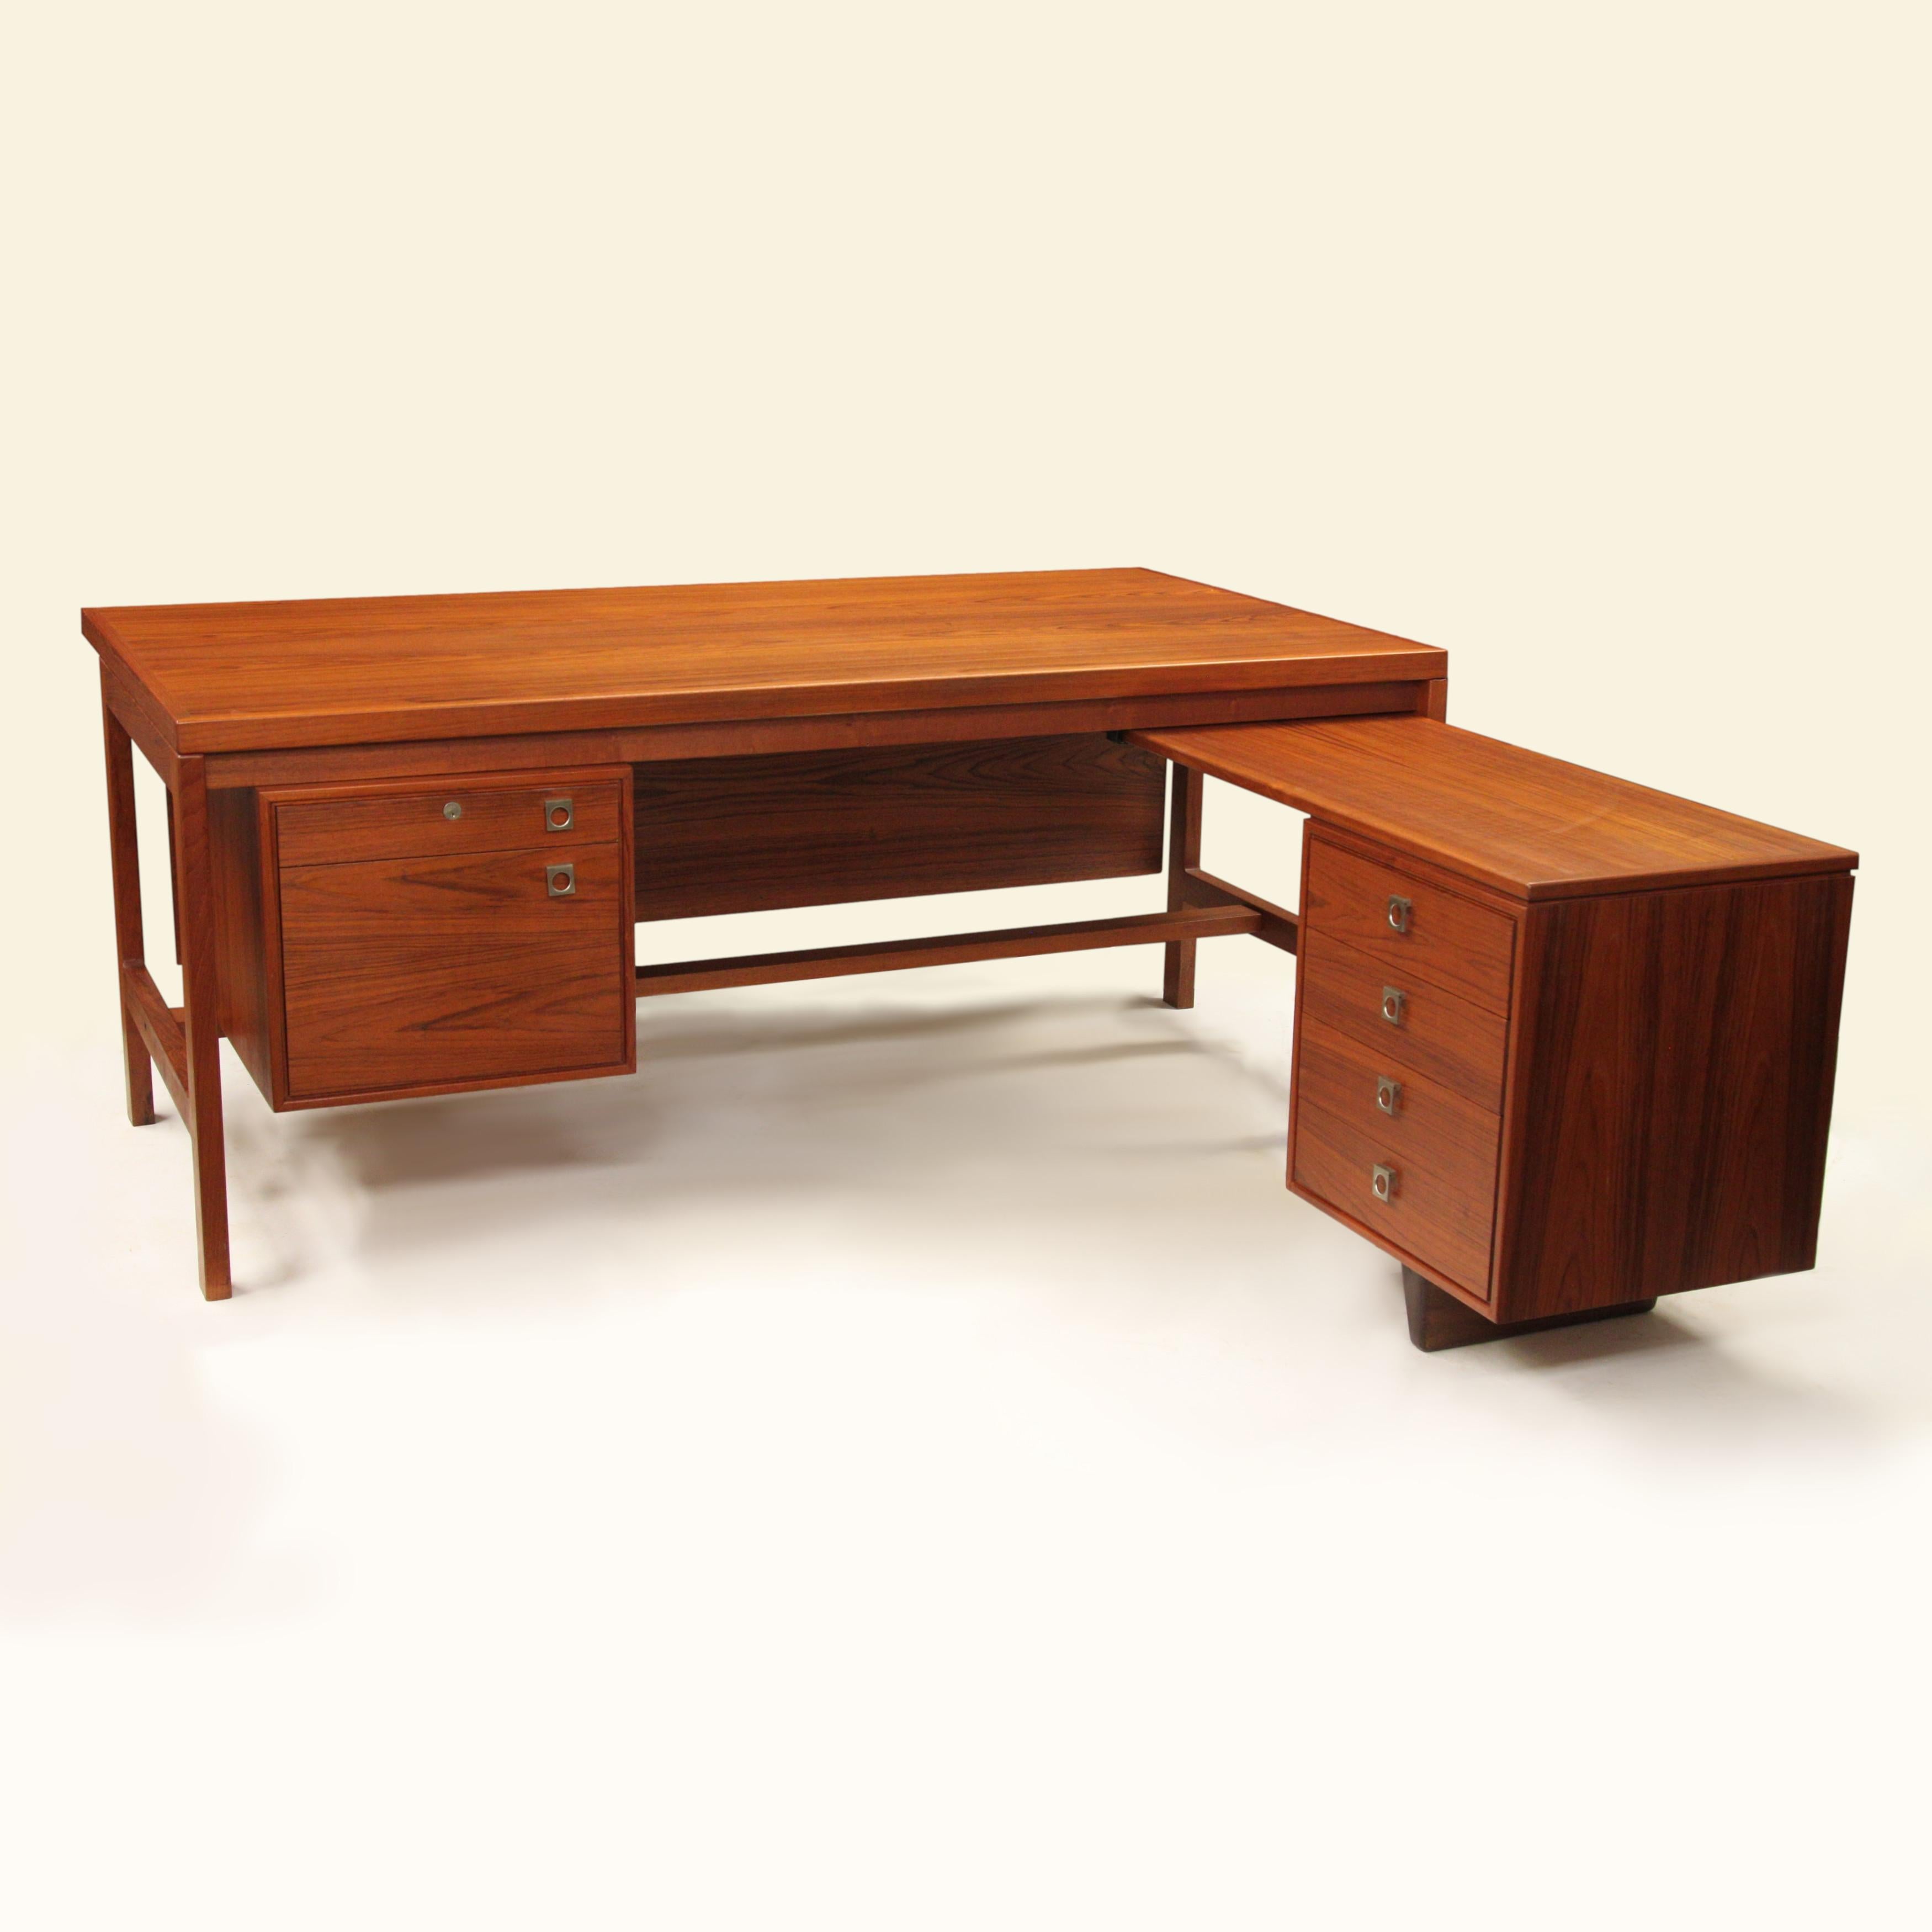 This is a wonderful executive desk designed by Arne Vodder for Danish furniture manufacturer H.P. Hansen. 

Desk Features:

- Book-matched teak veneer
- Solid teak frame
- Brushed aluminum hardware
- Six drawers
- L-Shaped design with